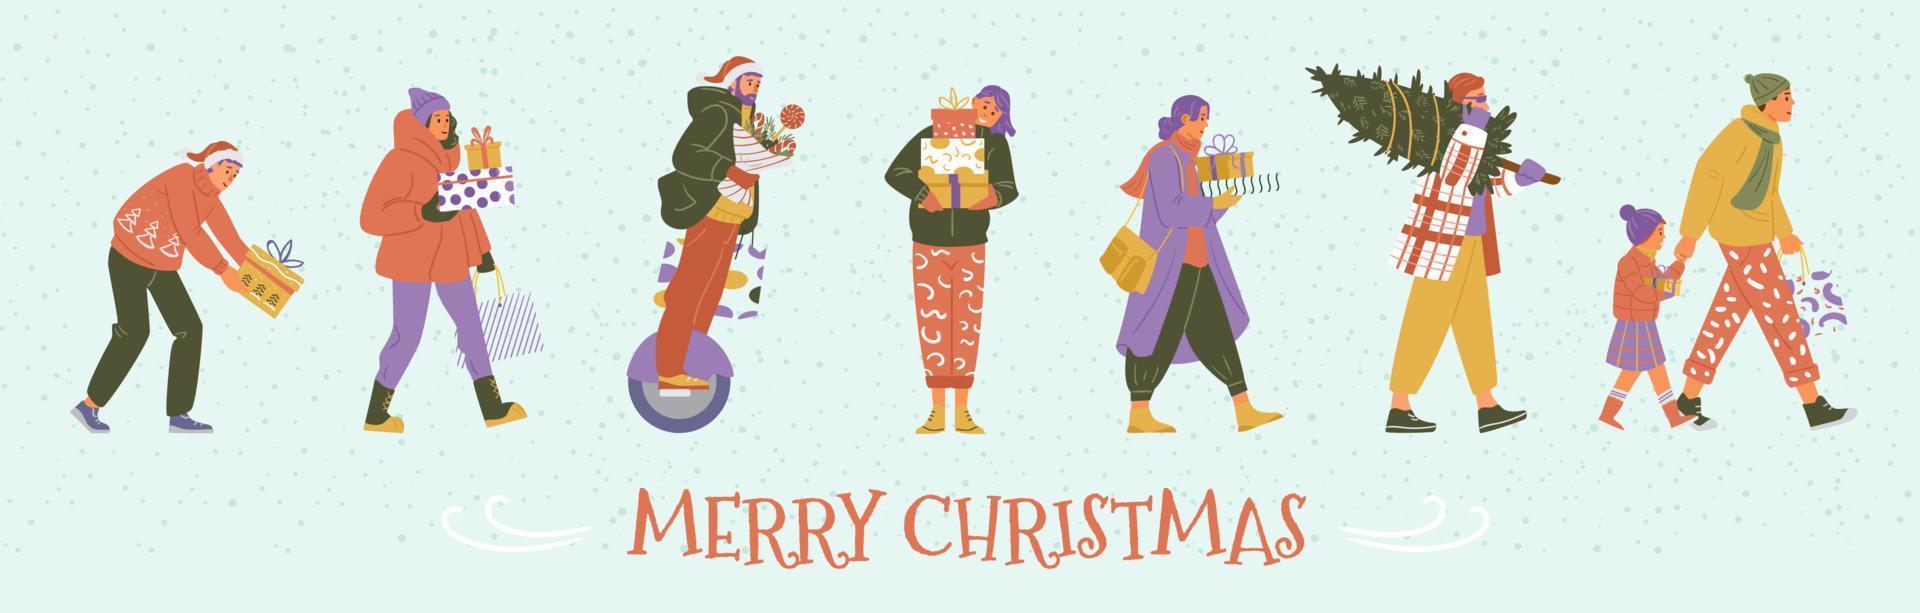 joyeux noël bannière vectorielle horizontale avec des gens en vêtements d'hiver marchant avec des coffrets cadeaux. vecteur